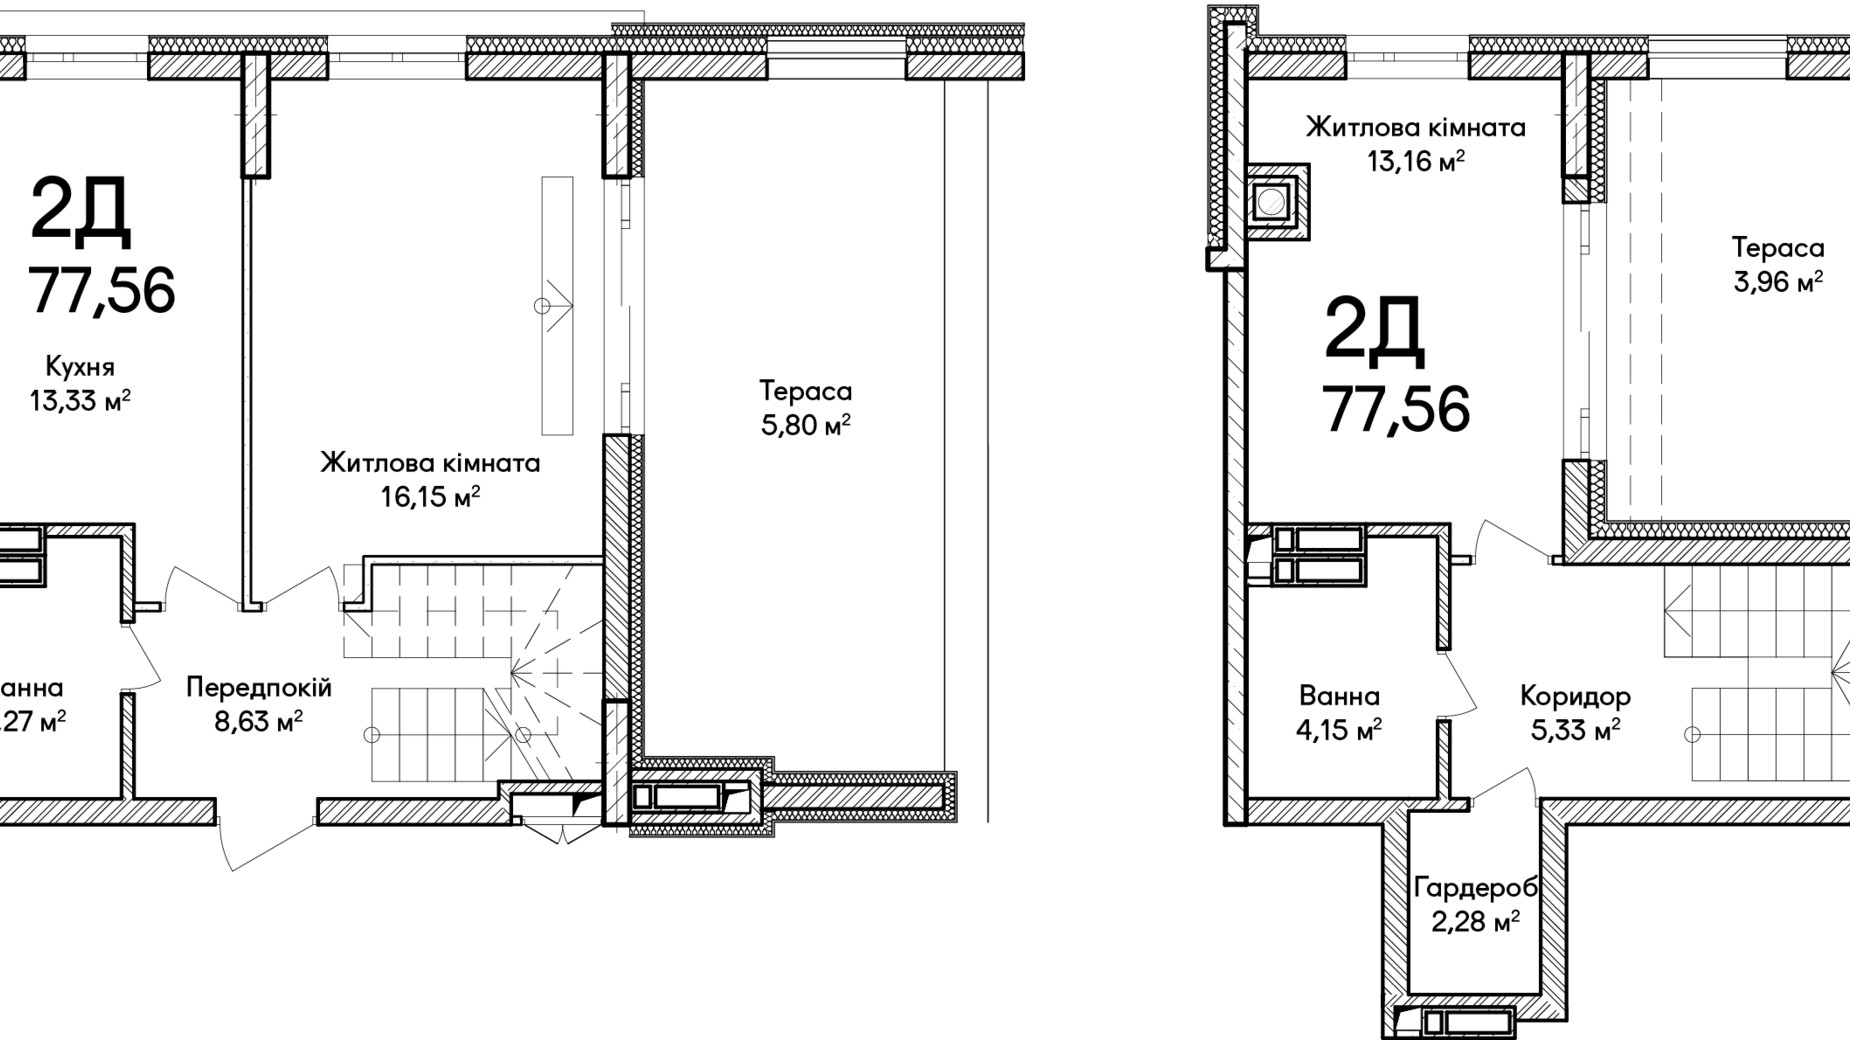 Планировка много­уровневой квартиры в ЖК Синергия Сити 77 м², фото 639879